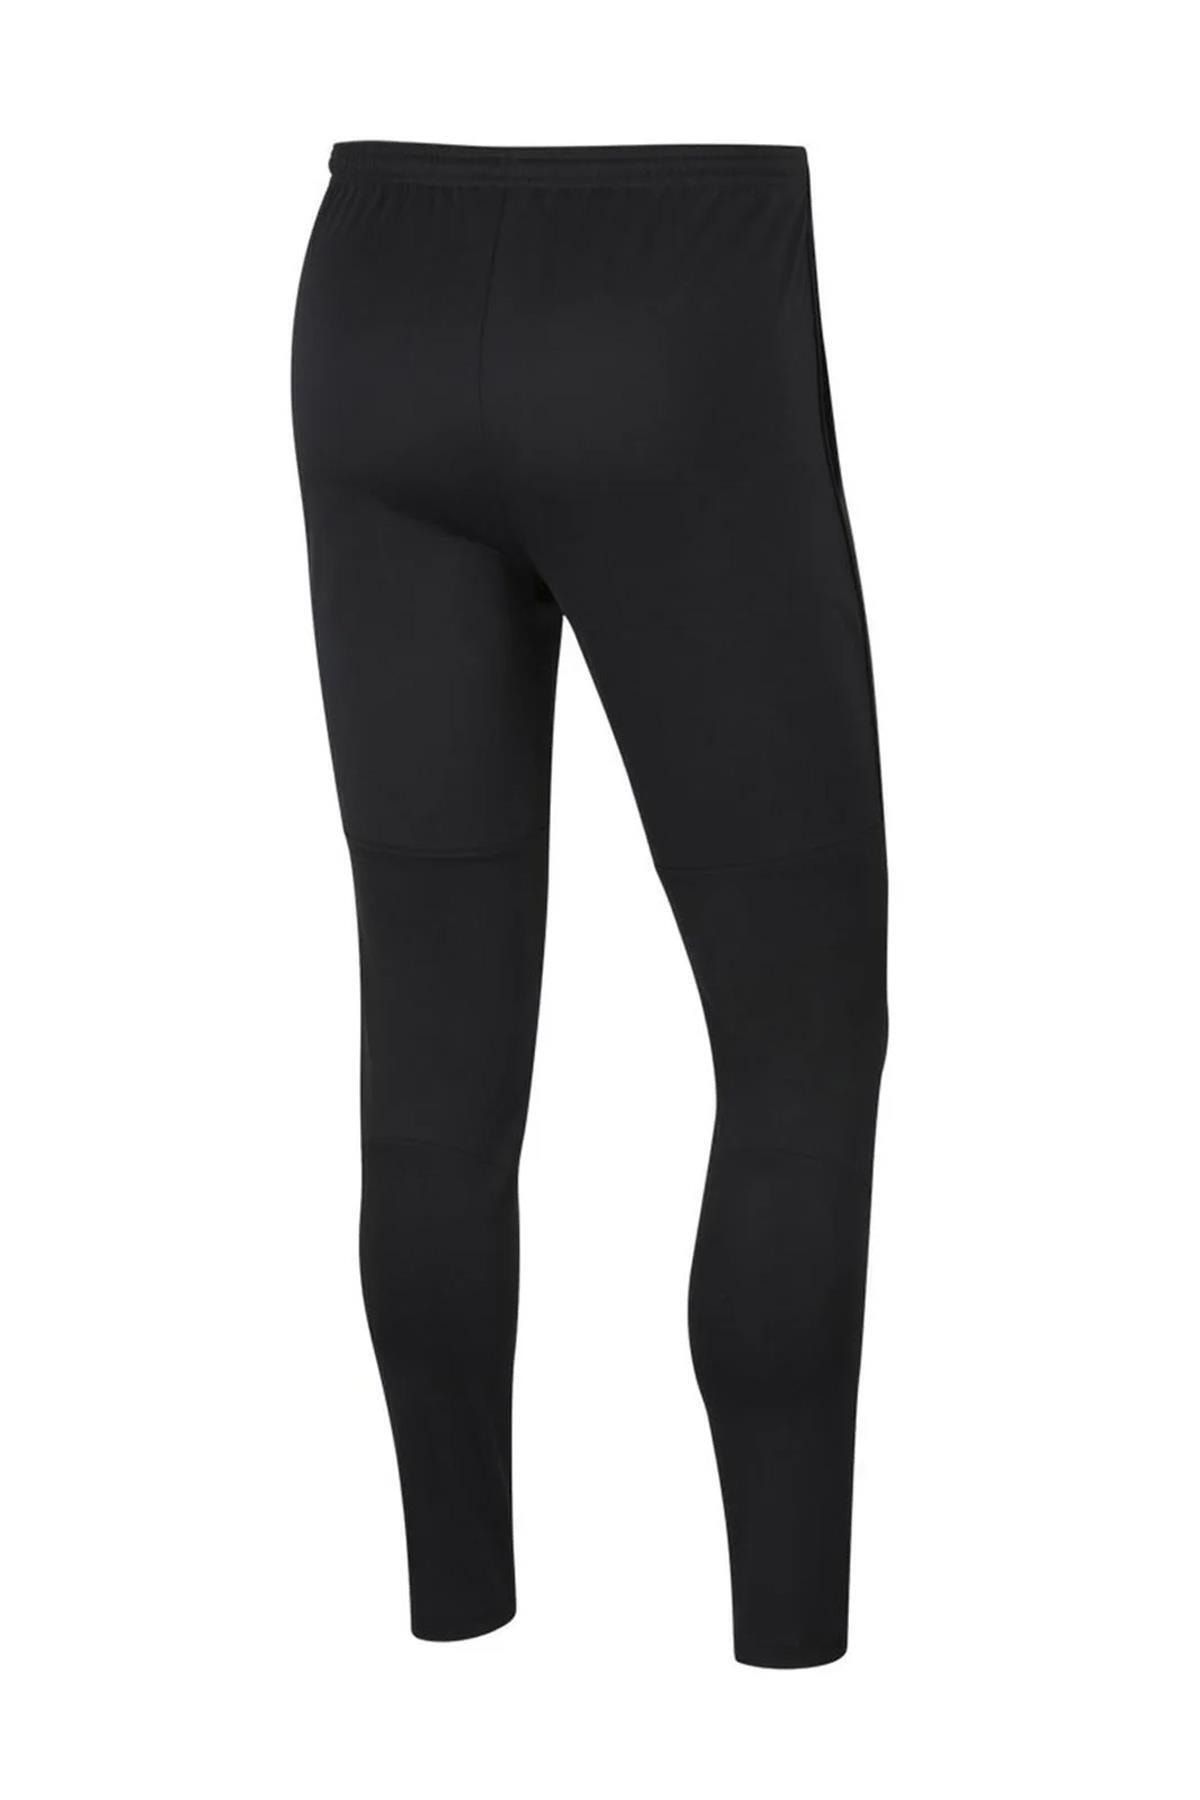 Nike M Dry Park 20 Pant Sweatpants Bv6877 - 010 Black Black-xxl